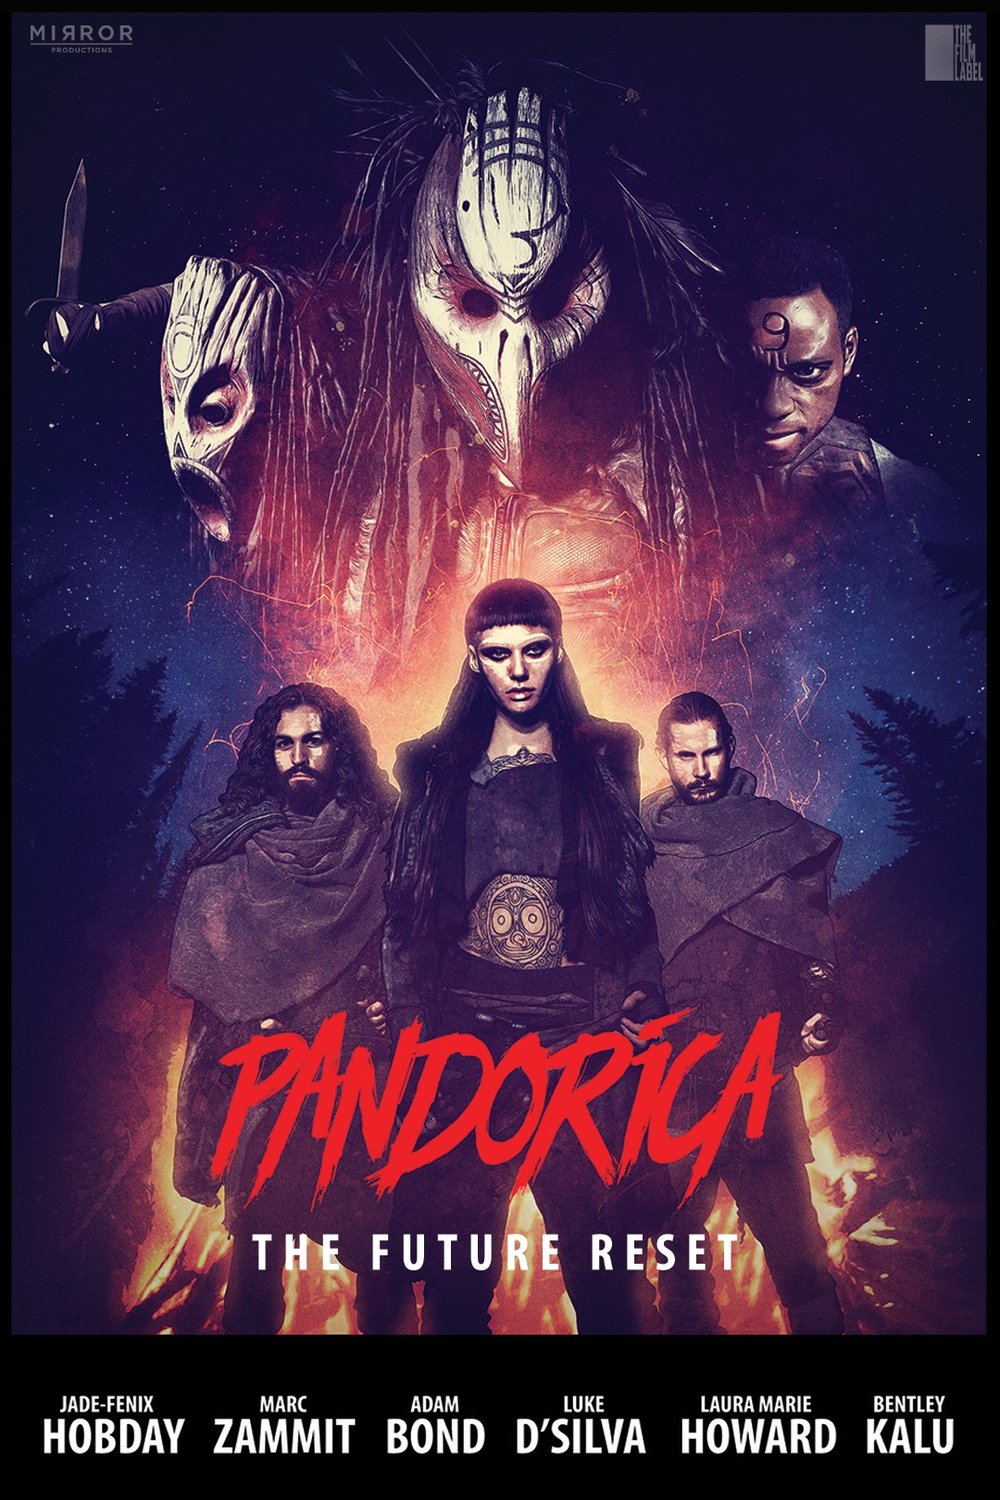 L'affiche du film Pandorica